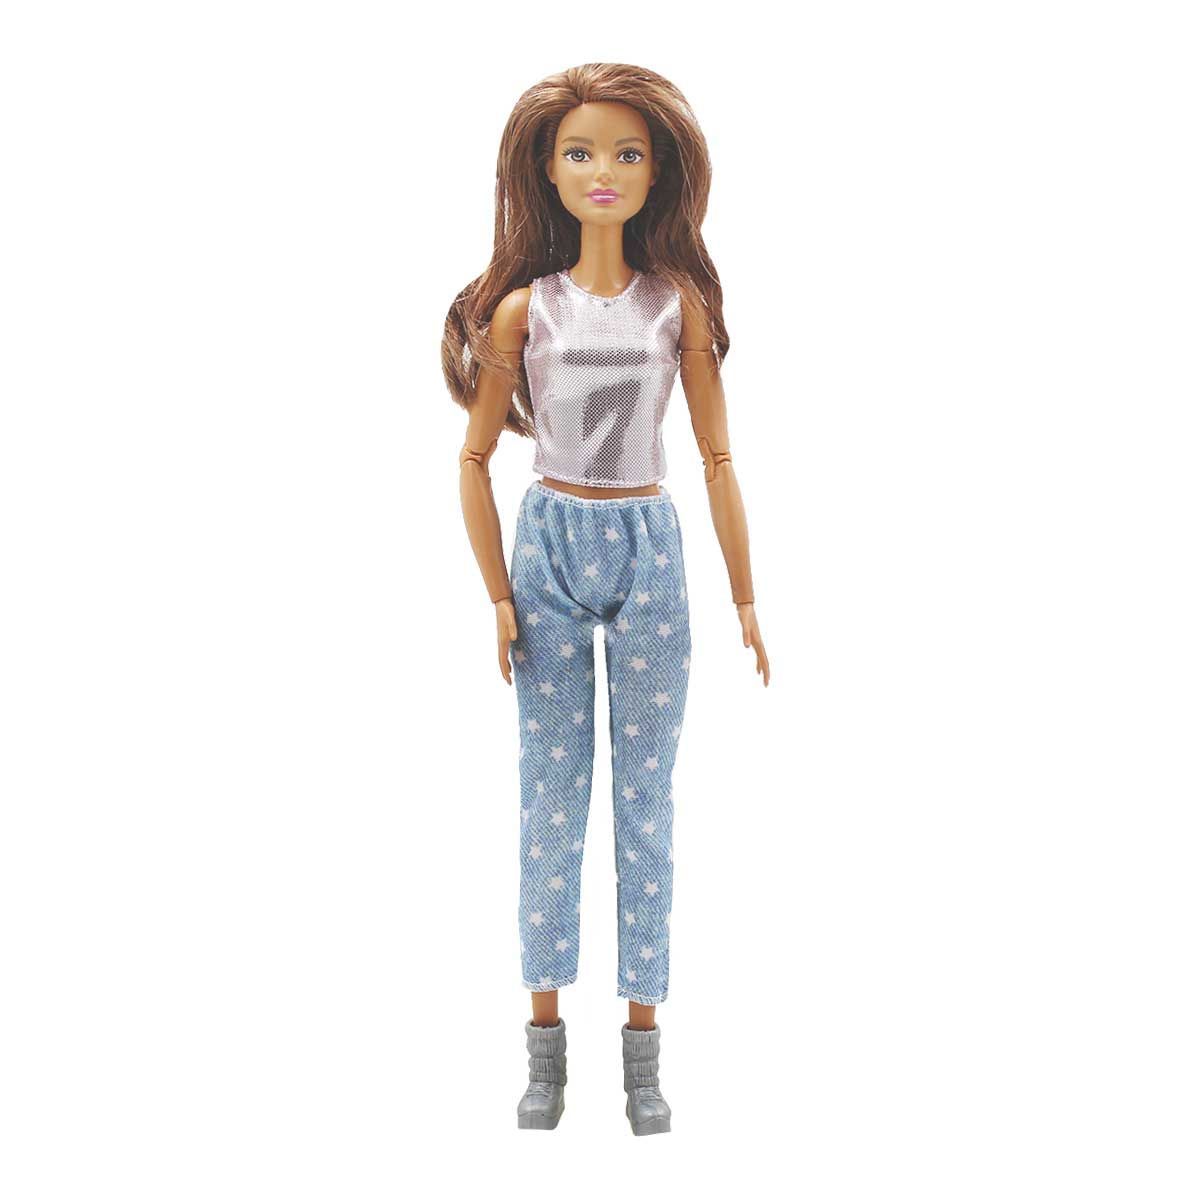 Одежда Dolls Accessories для Барби и кукол ростом 29 см Диско